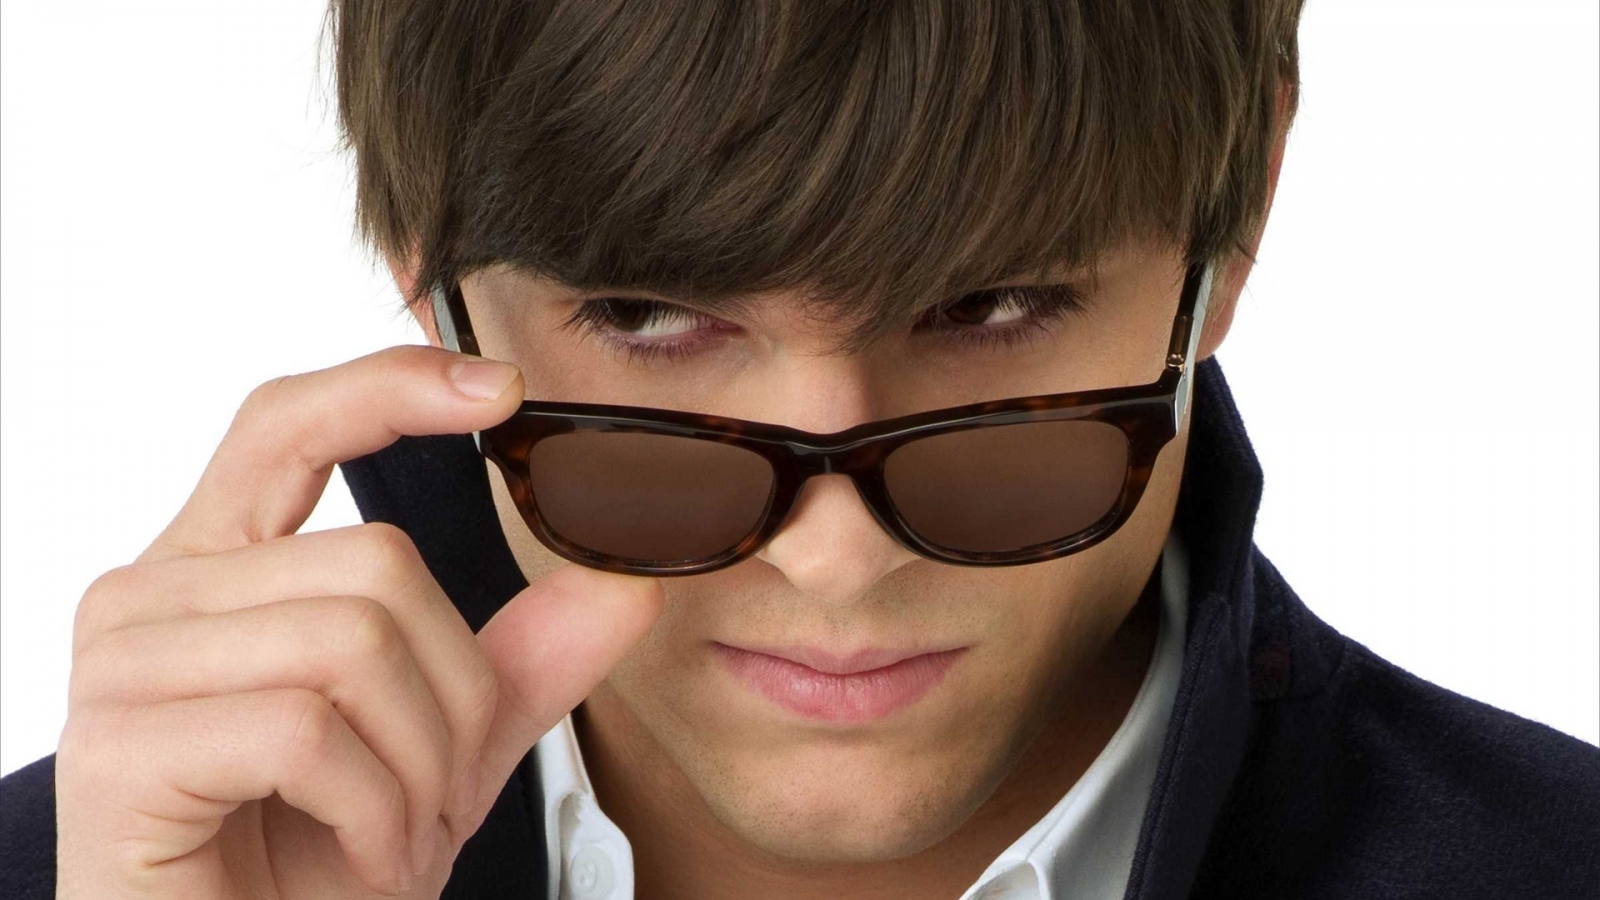 Ashton Kutcher with Sunglasses for 1600 x 900 HDTV resolution